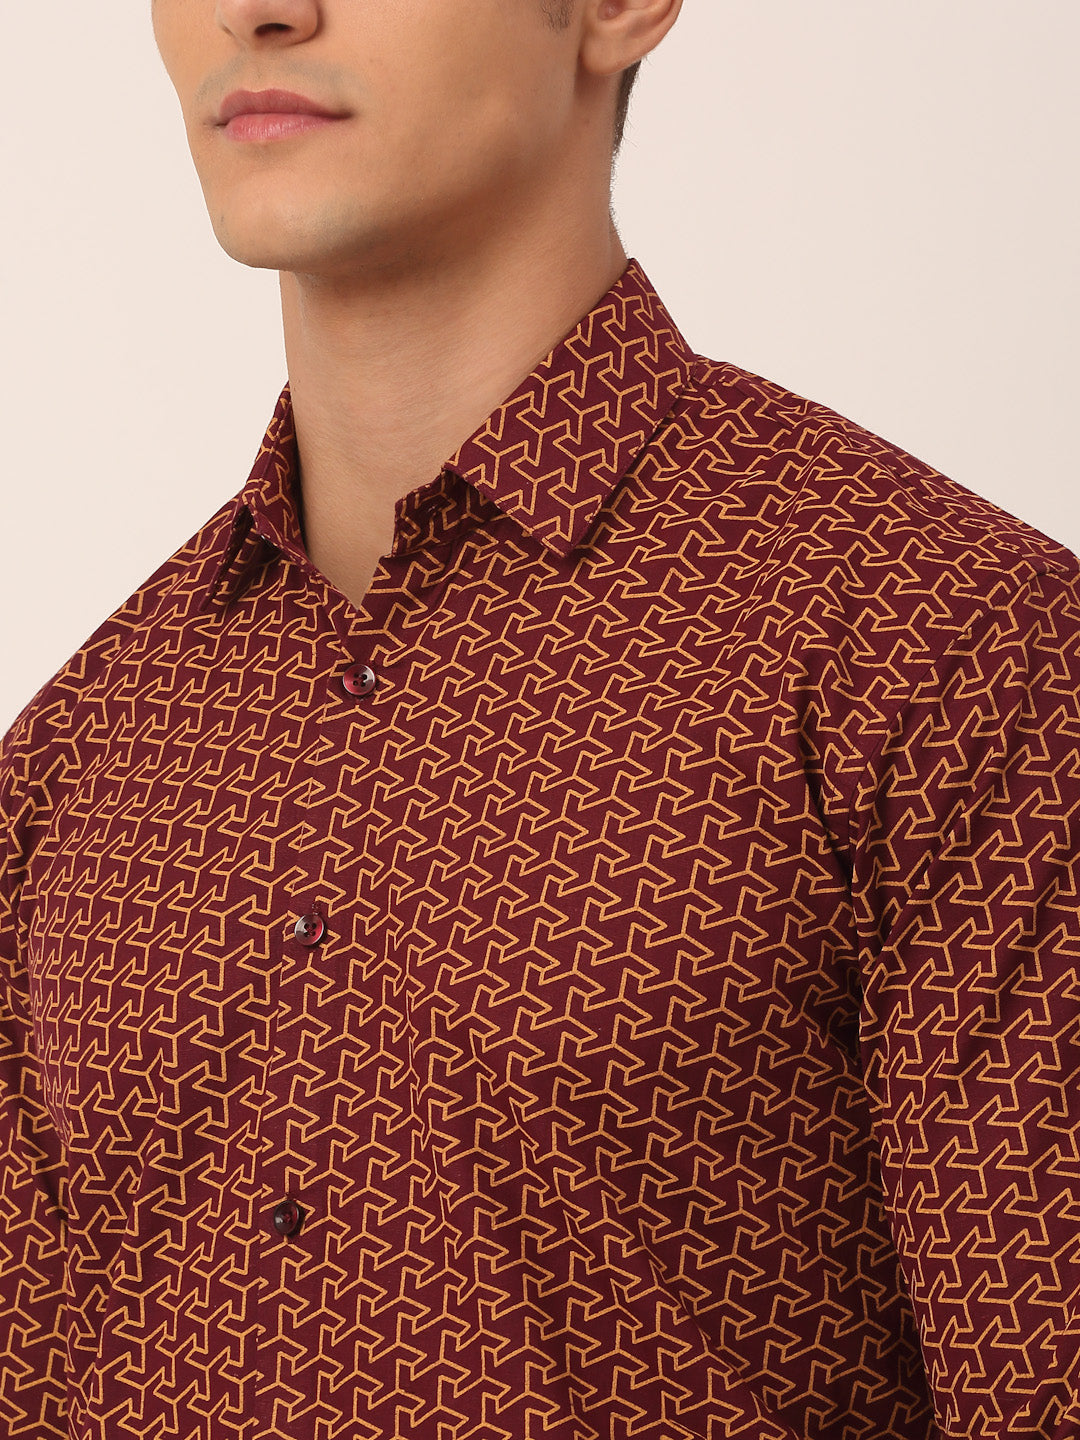 Men's  Cotton Printed Formal Shirts ( SF 821Brown ) - Jainish